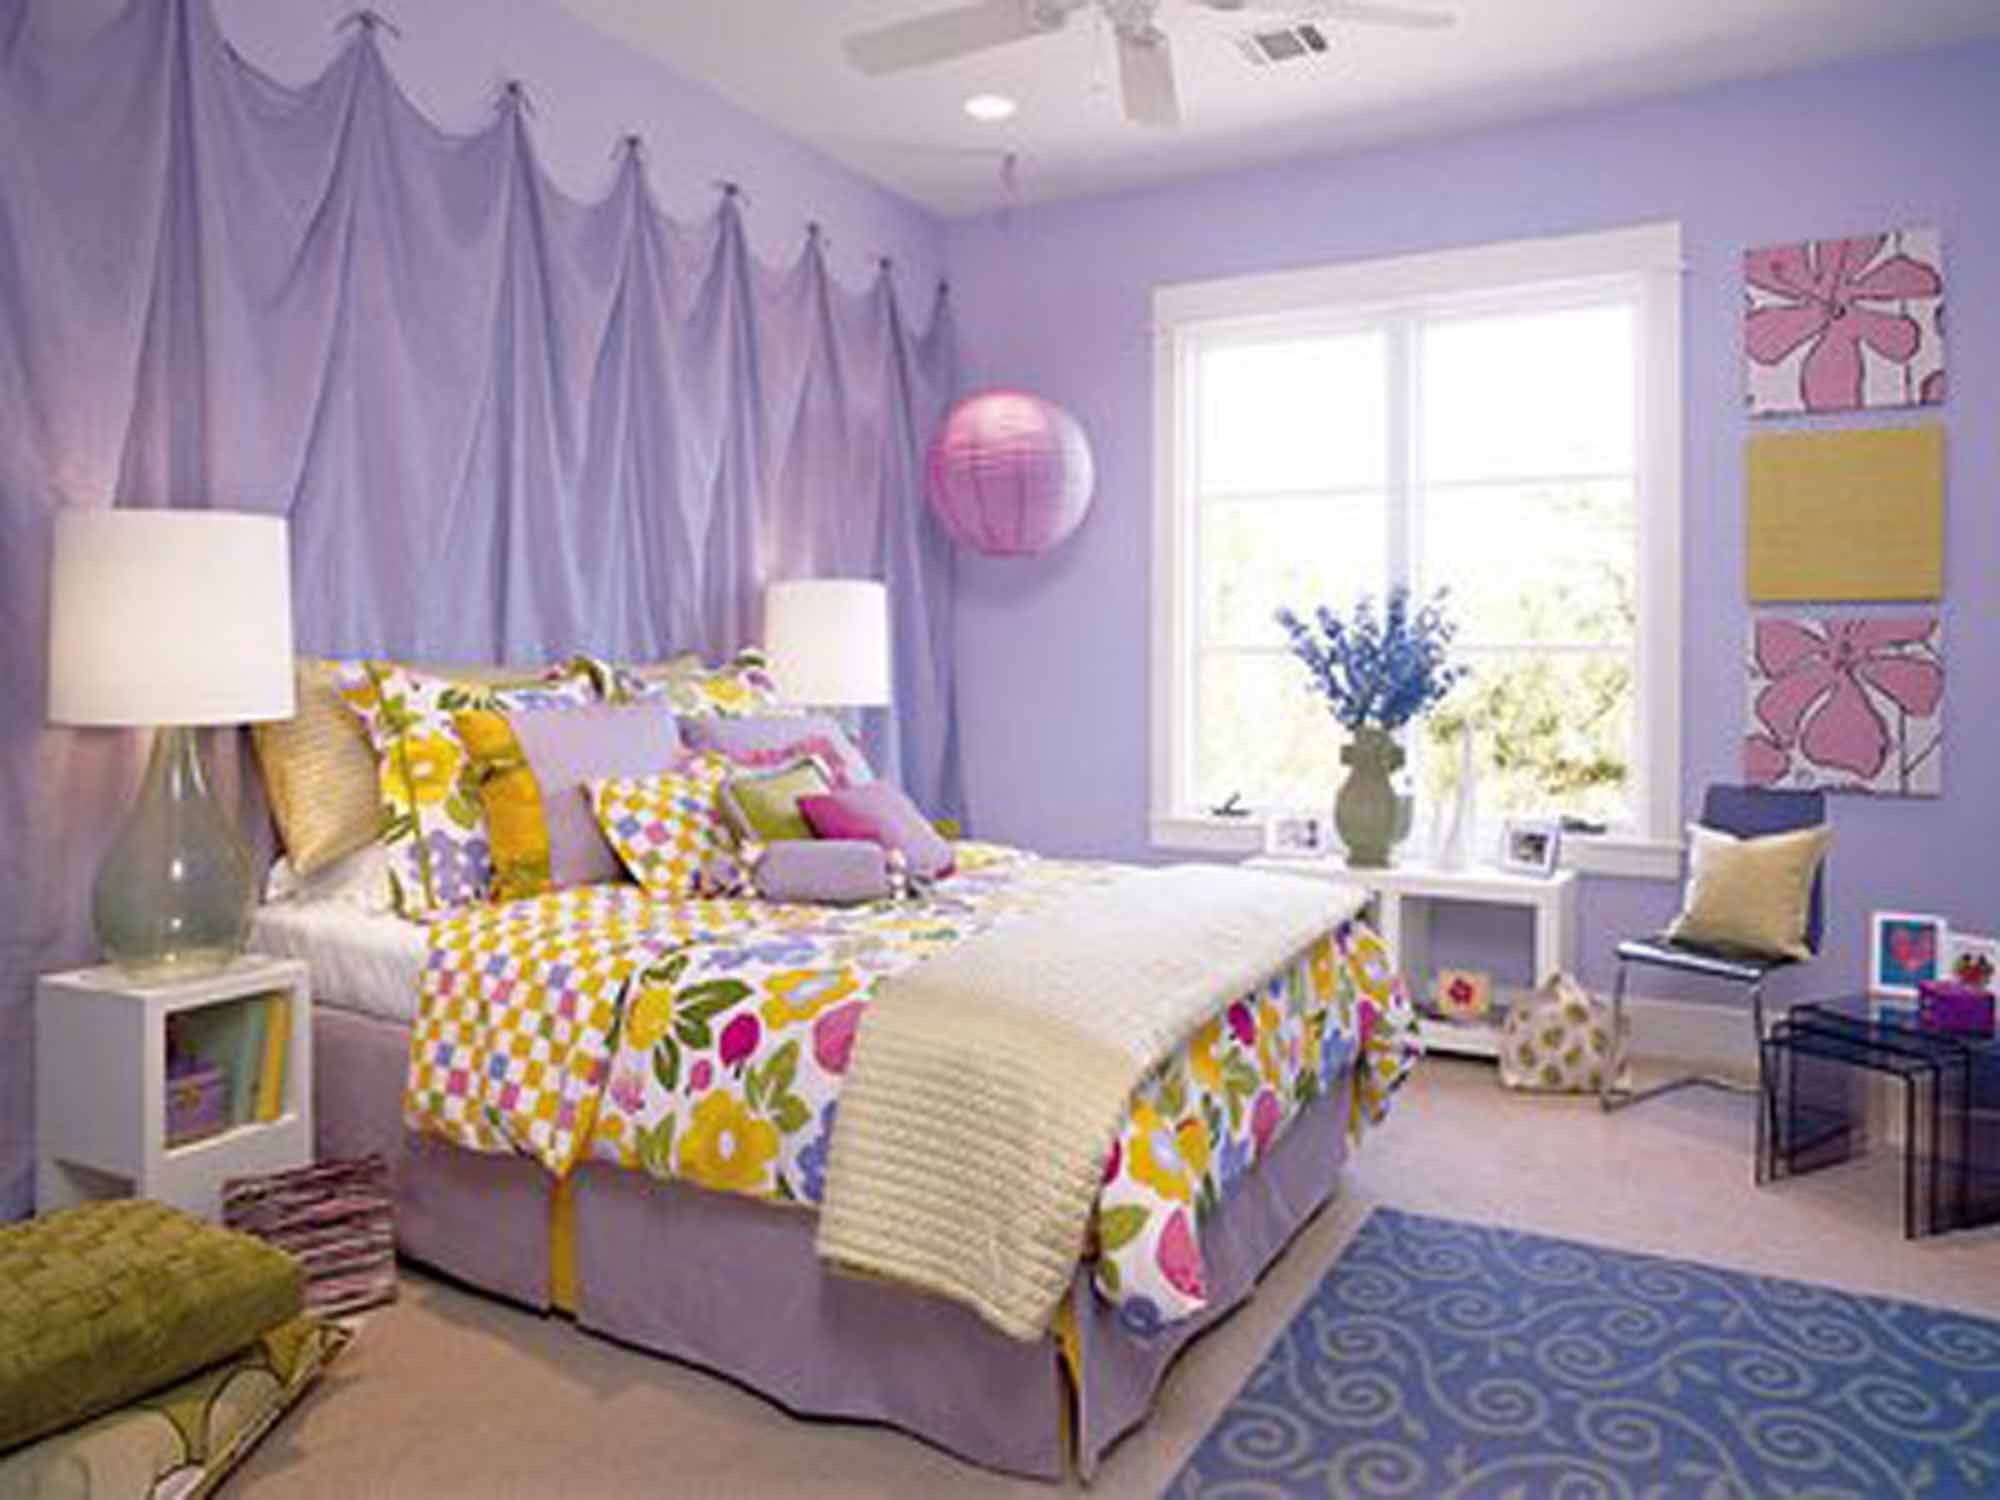 2000x1500 tumblr rooms diy color schemes for tween bedrooms teenage bedroom ideas  ikea how to make room ...